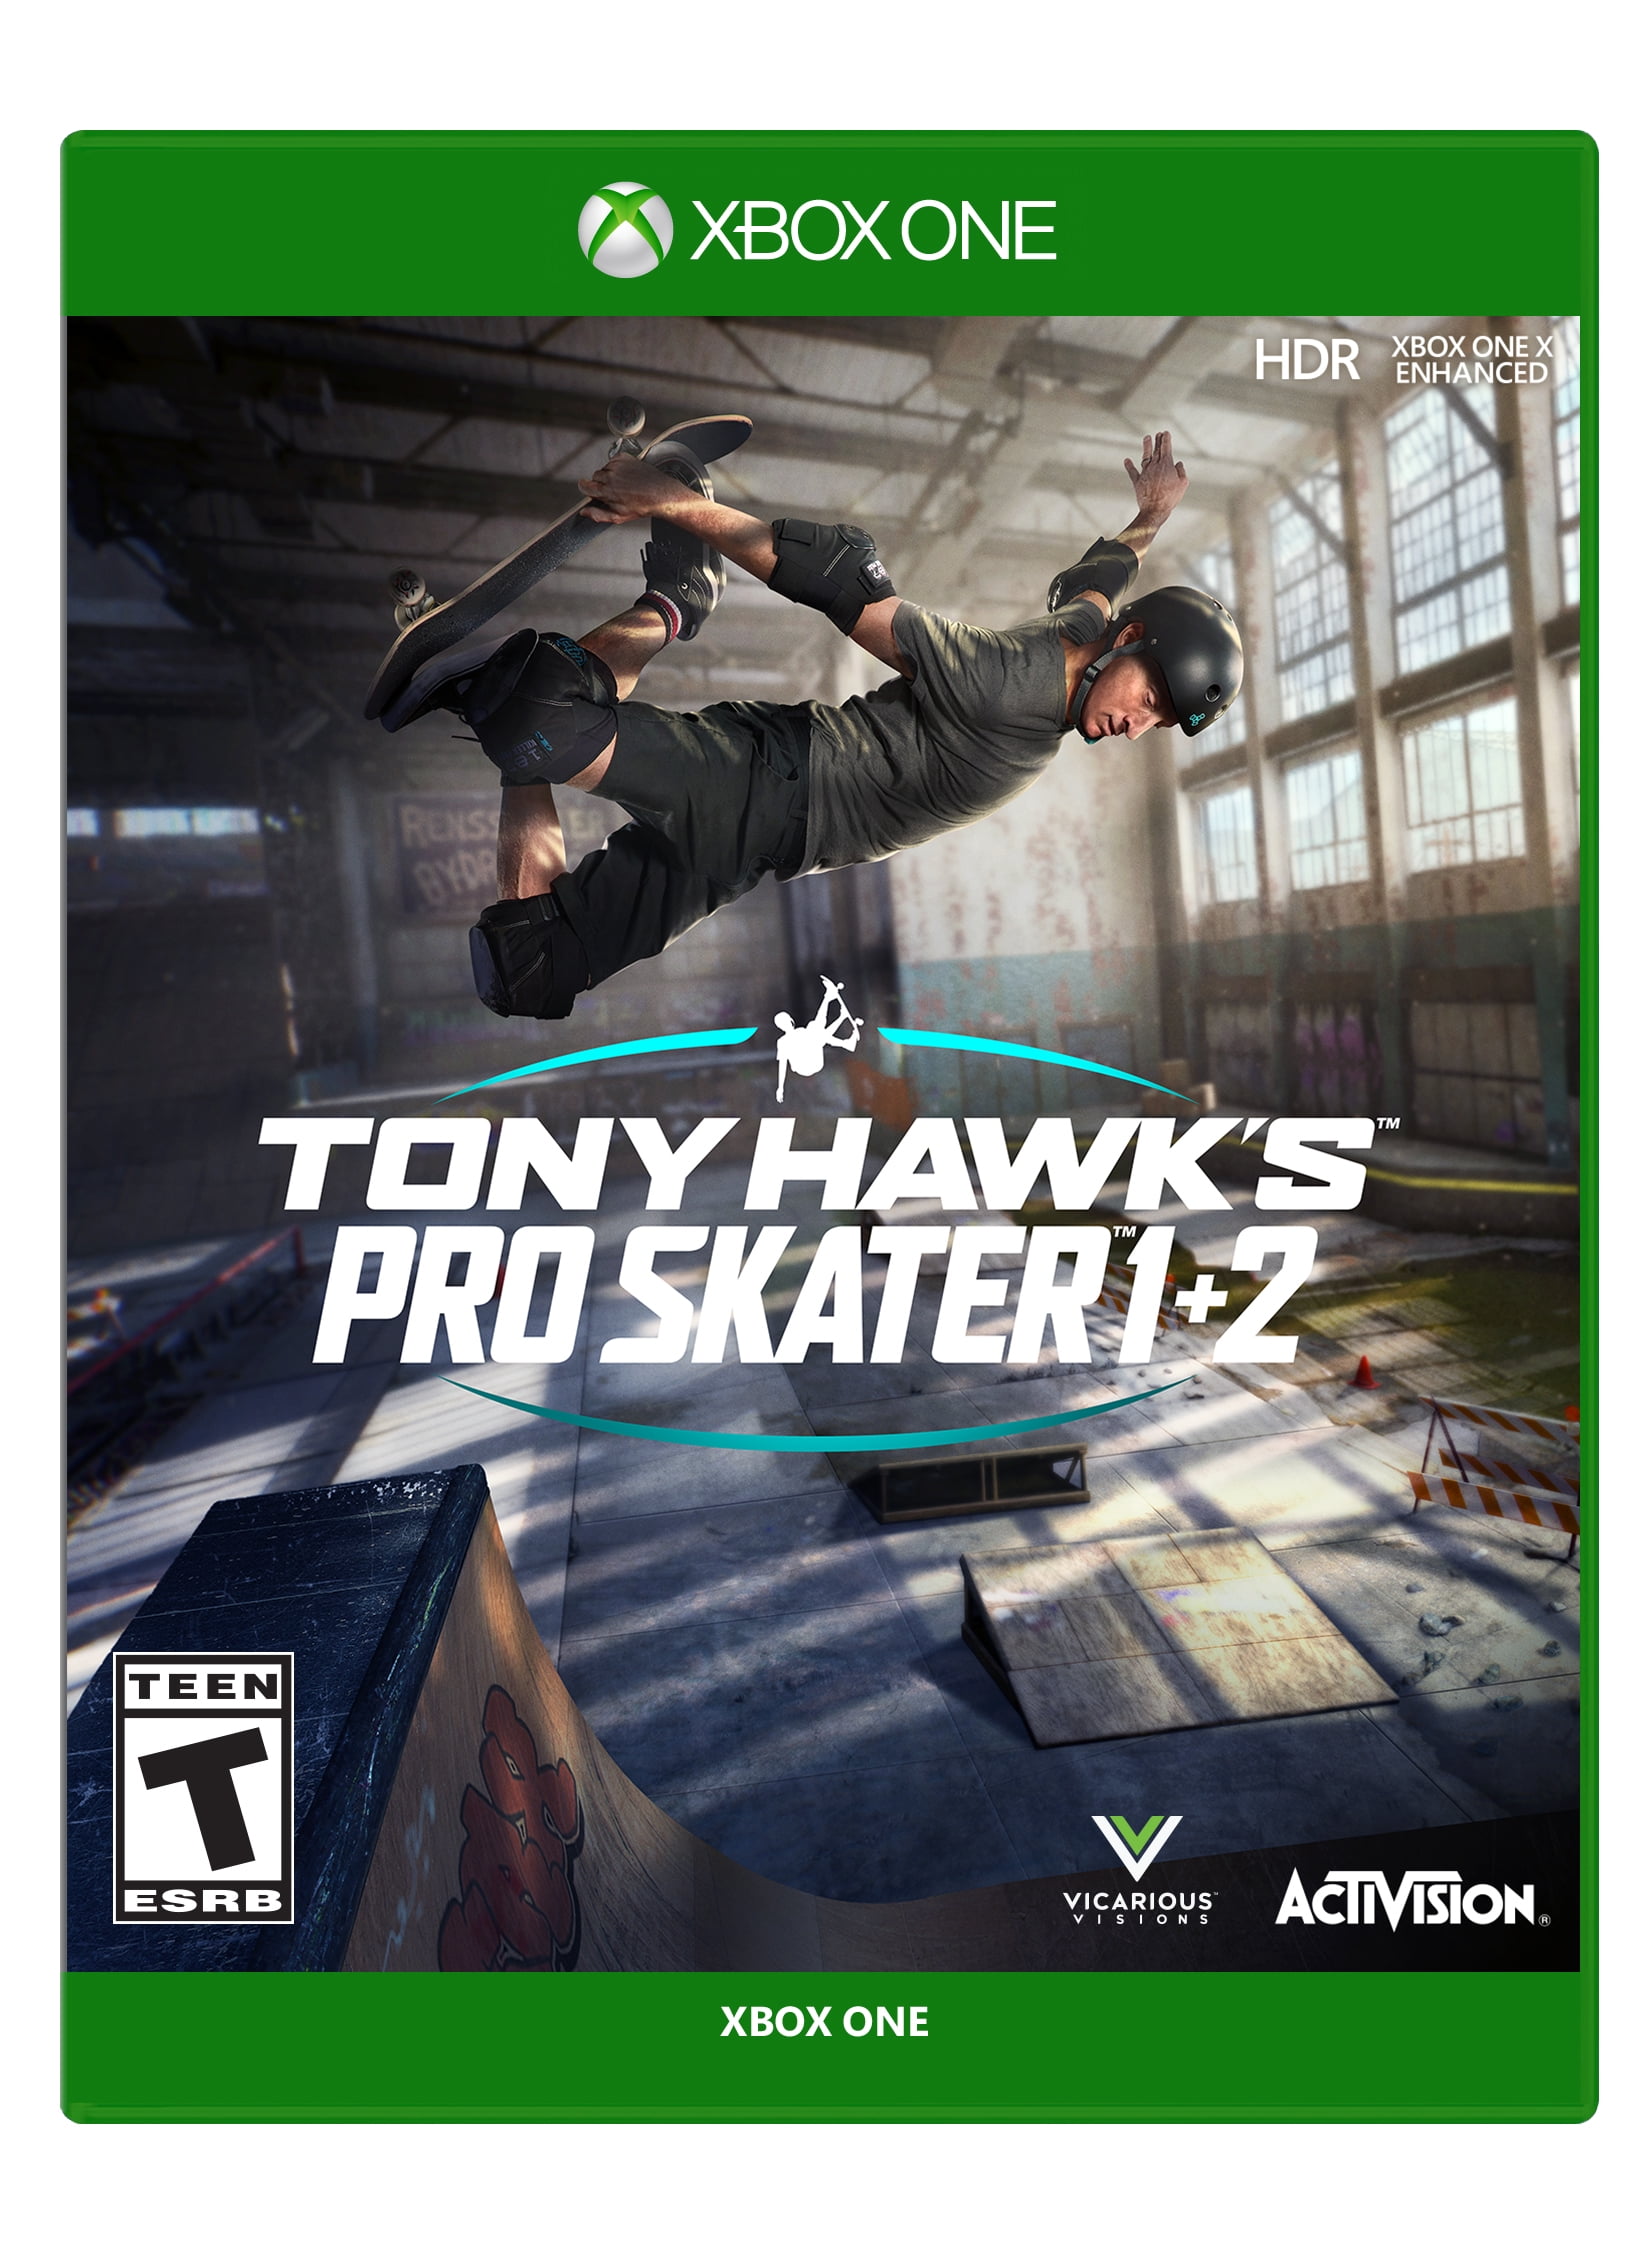 YMMV Activision Tony Hawk's Pro Skater 1 + 2, Activision, Xbox One $14